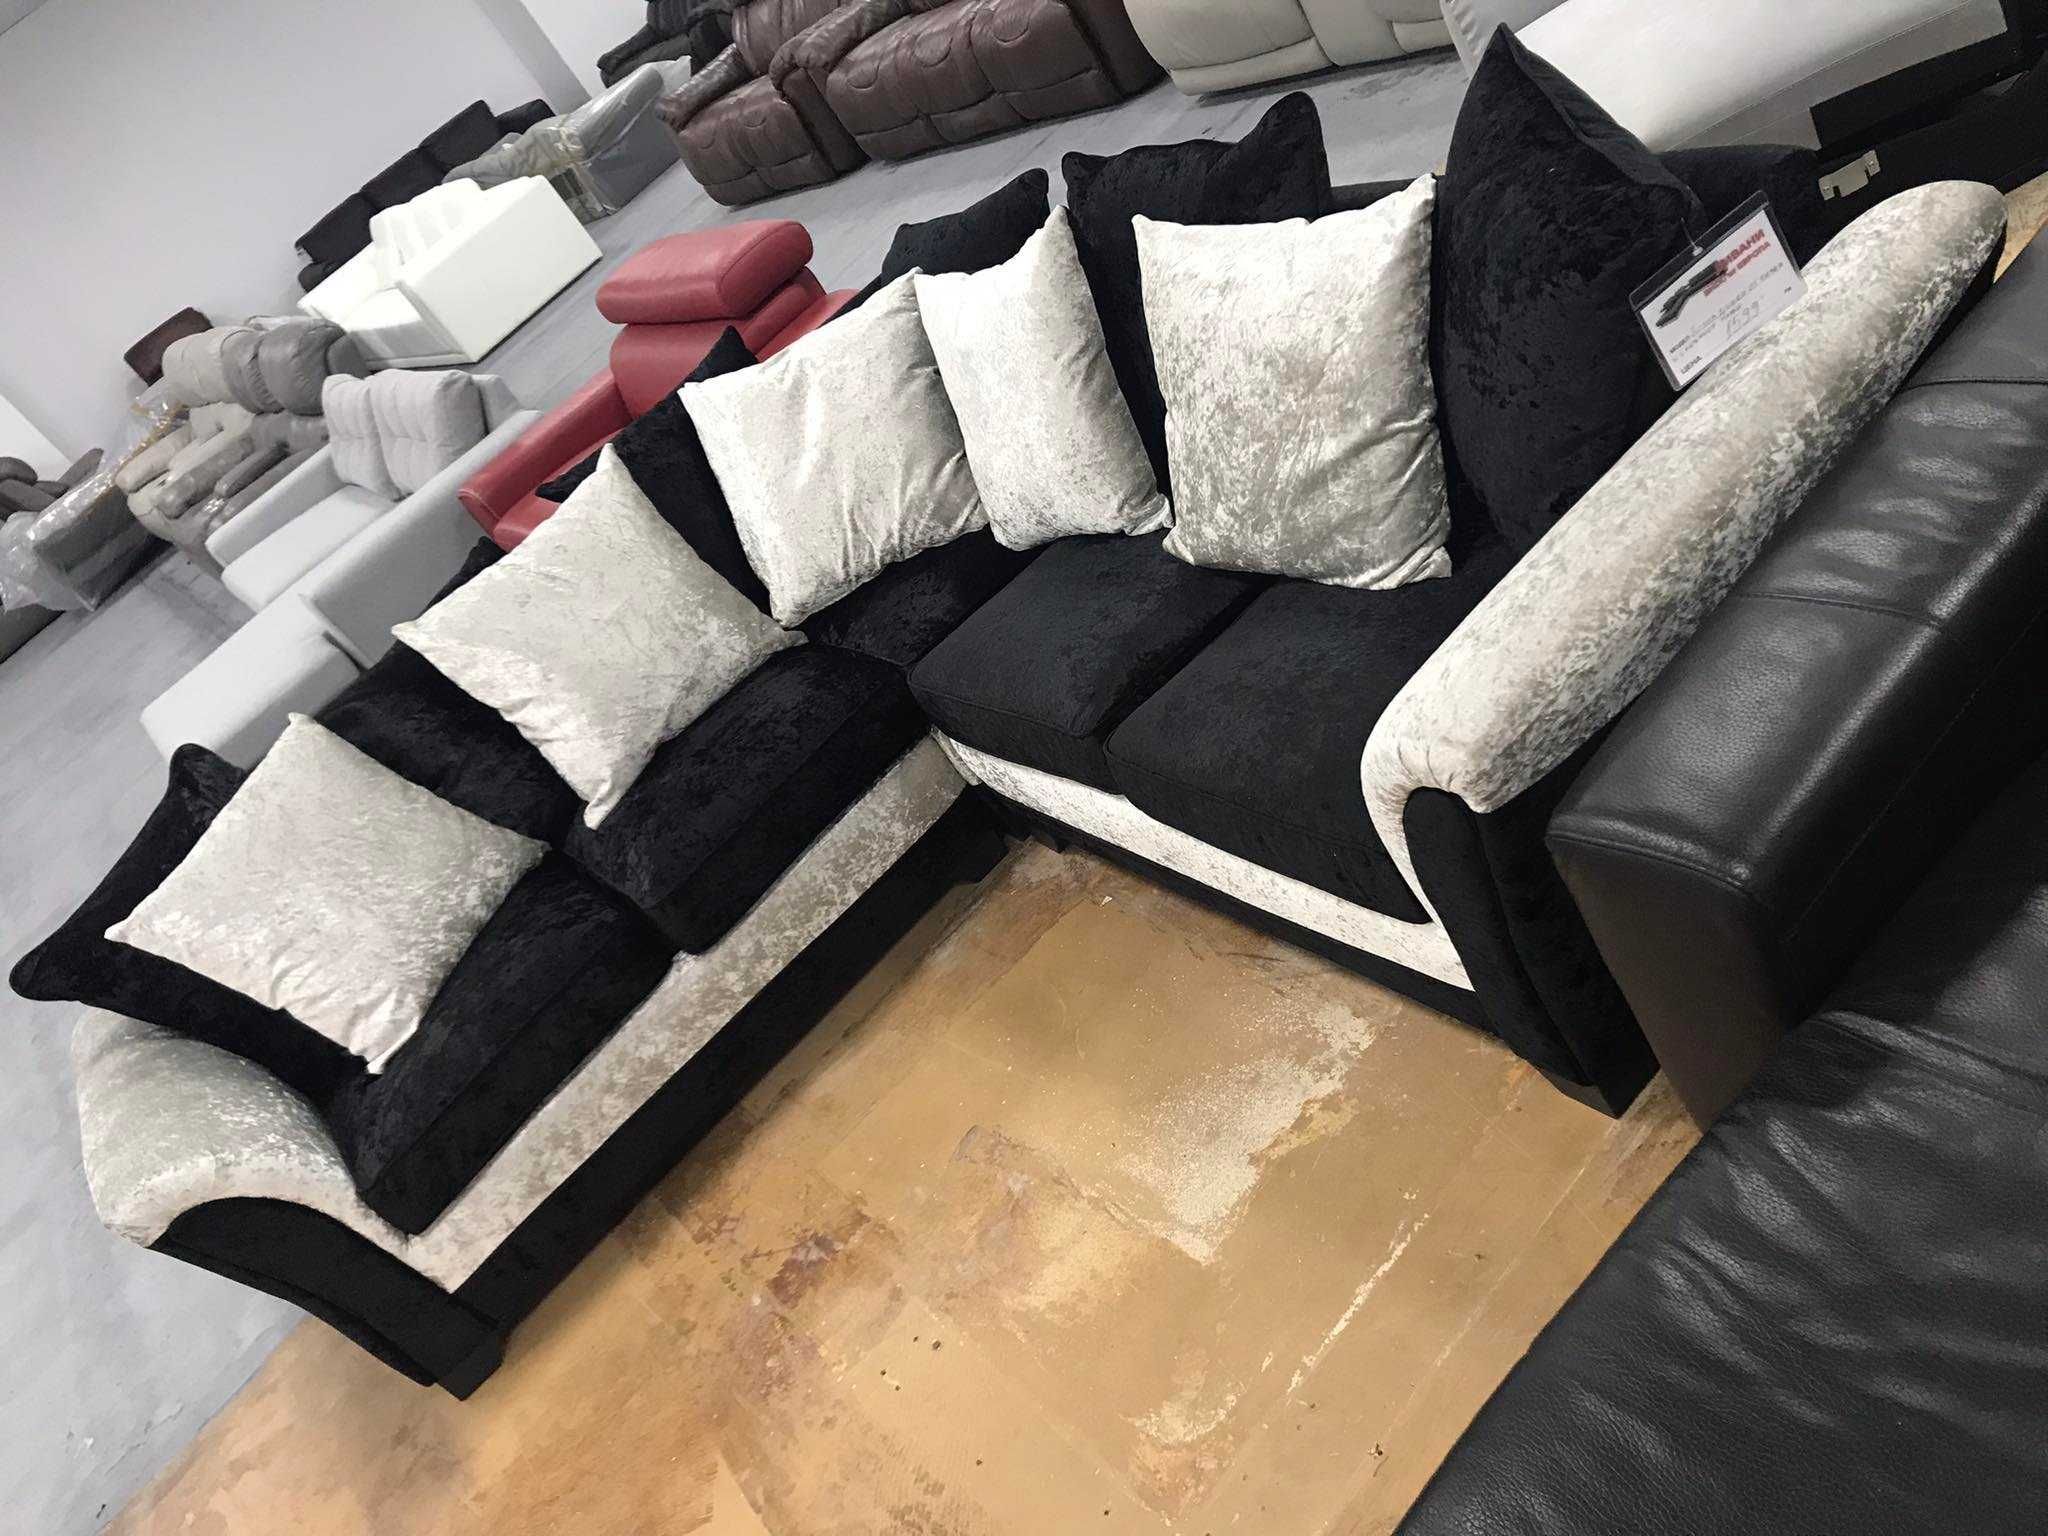 Нов Ъглов диван от плат цвят - черно и сиво, материал плюш